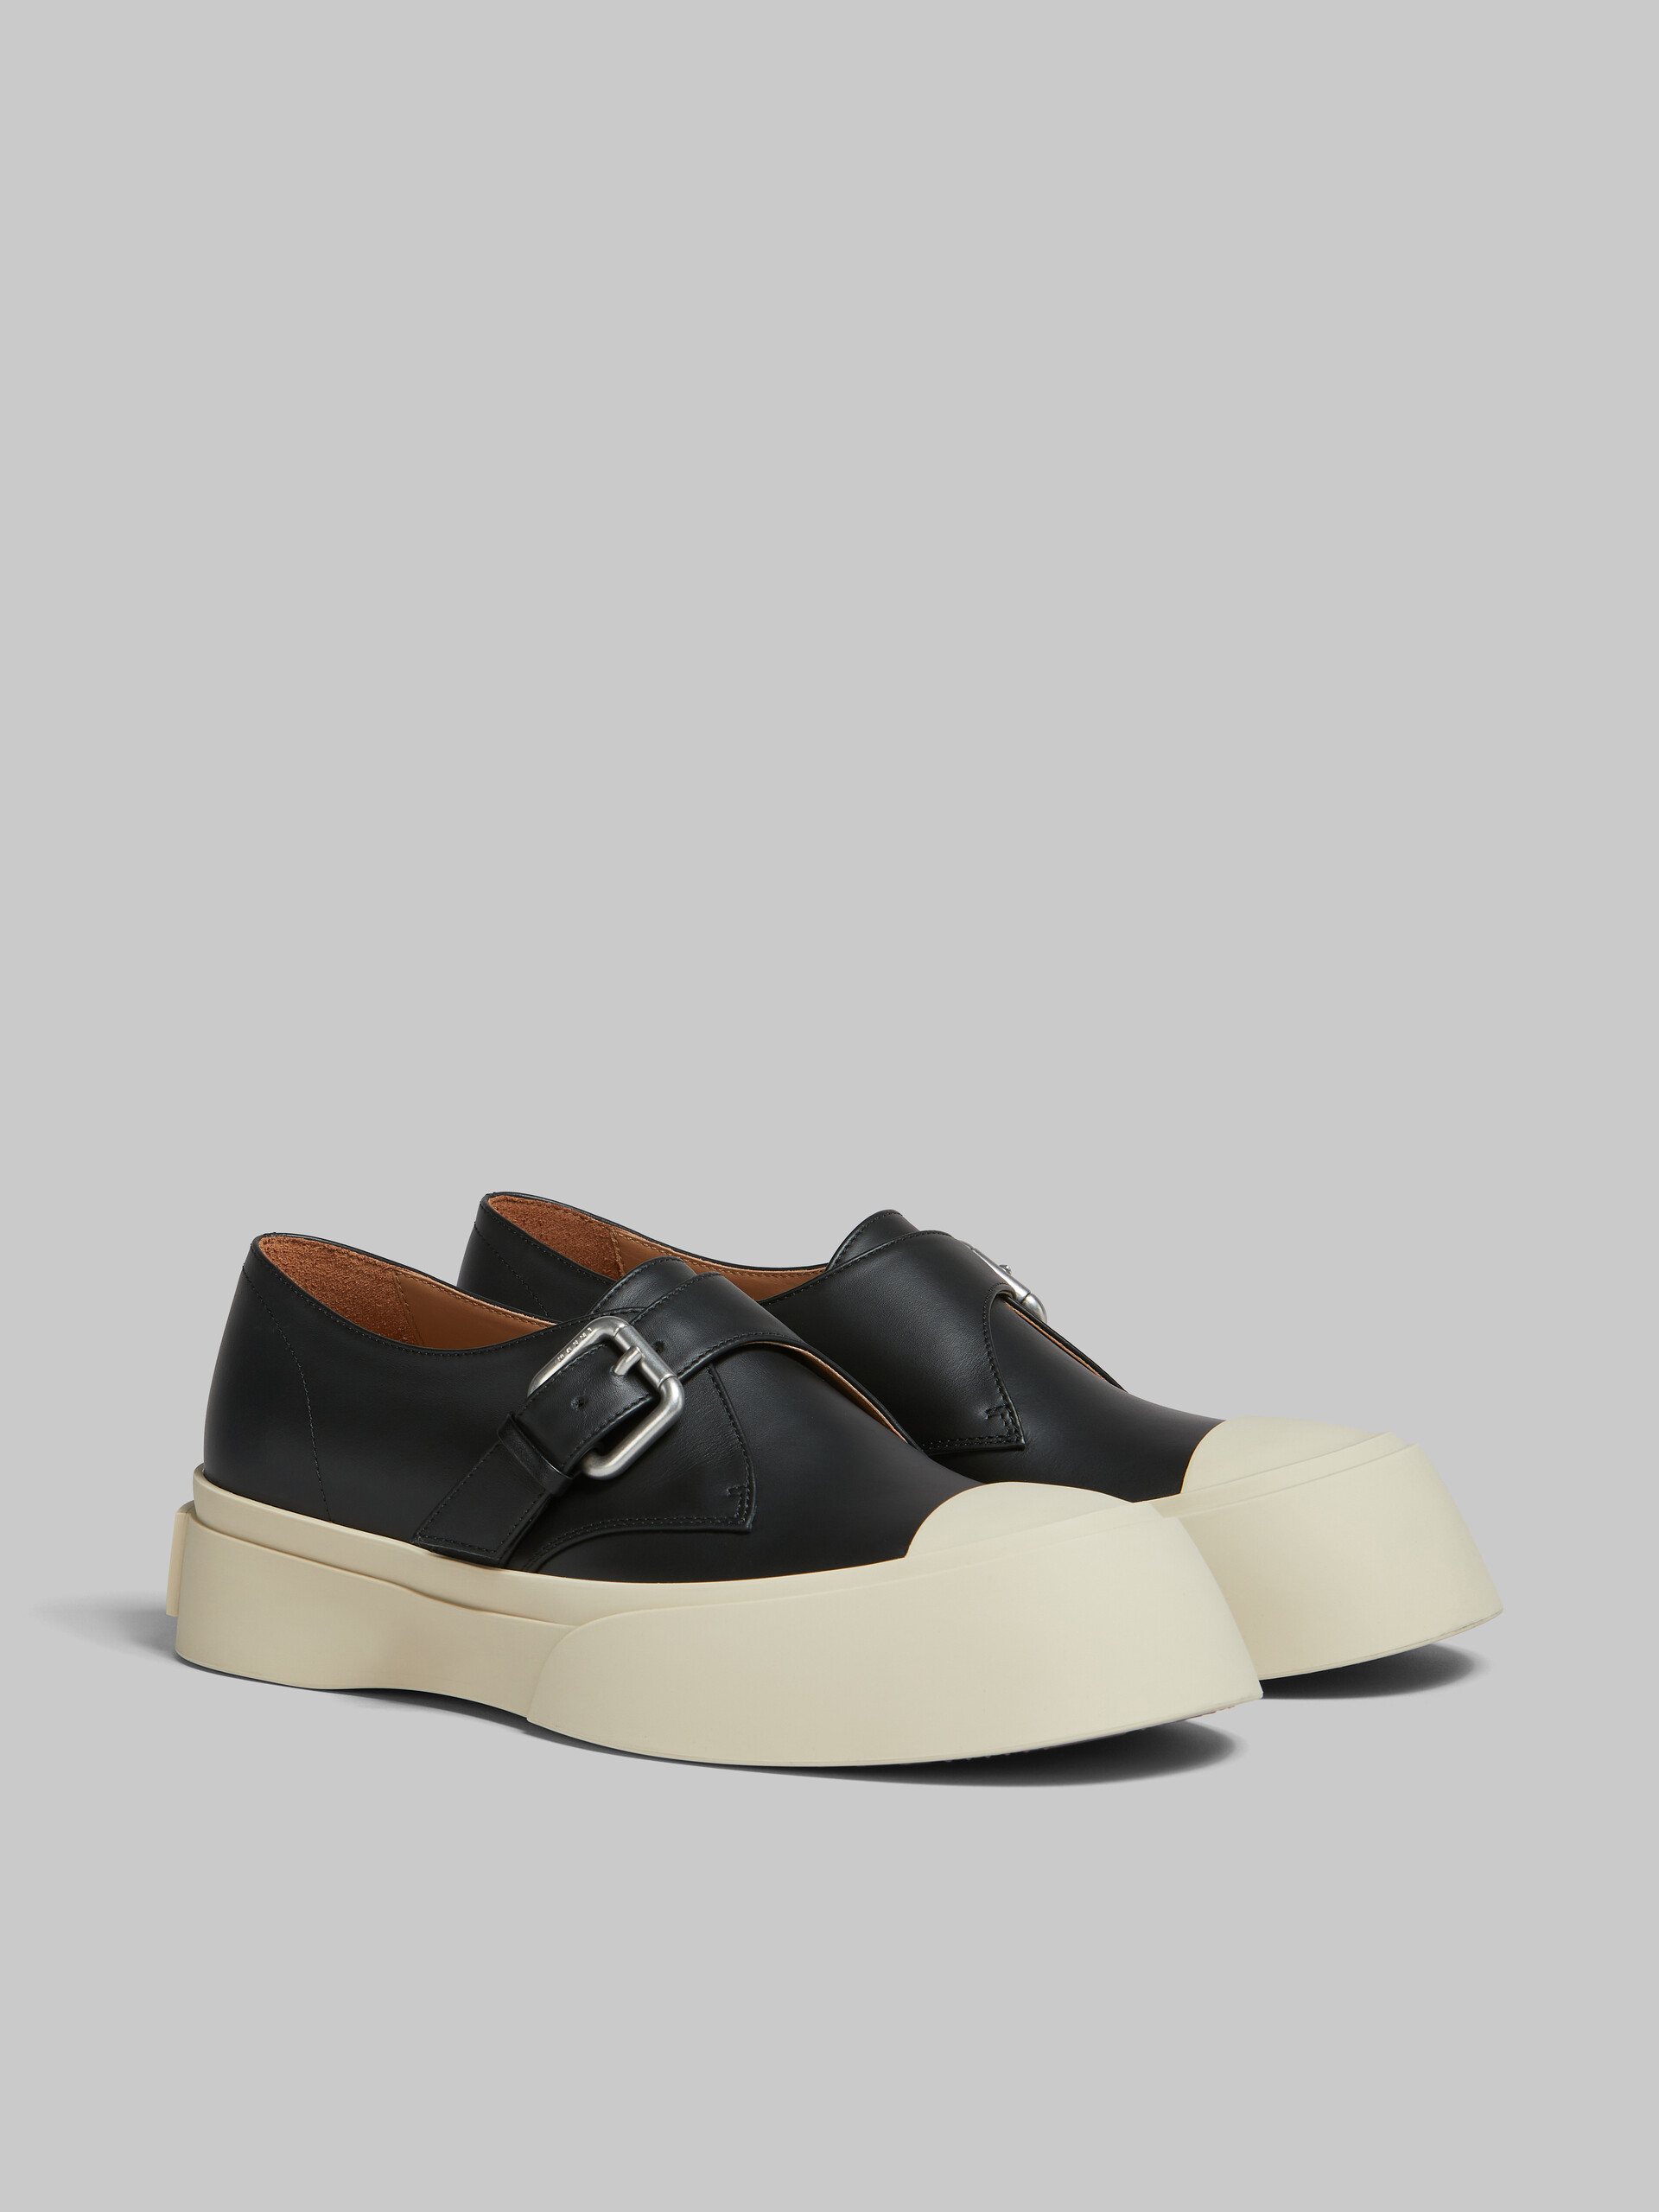 Zapato Pablo con cierre de hebilla de piel negra - Sneakers - Image 2